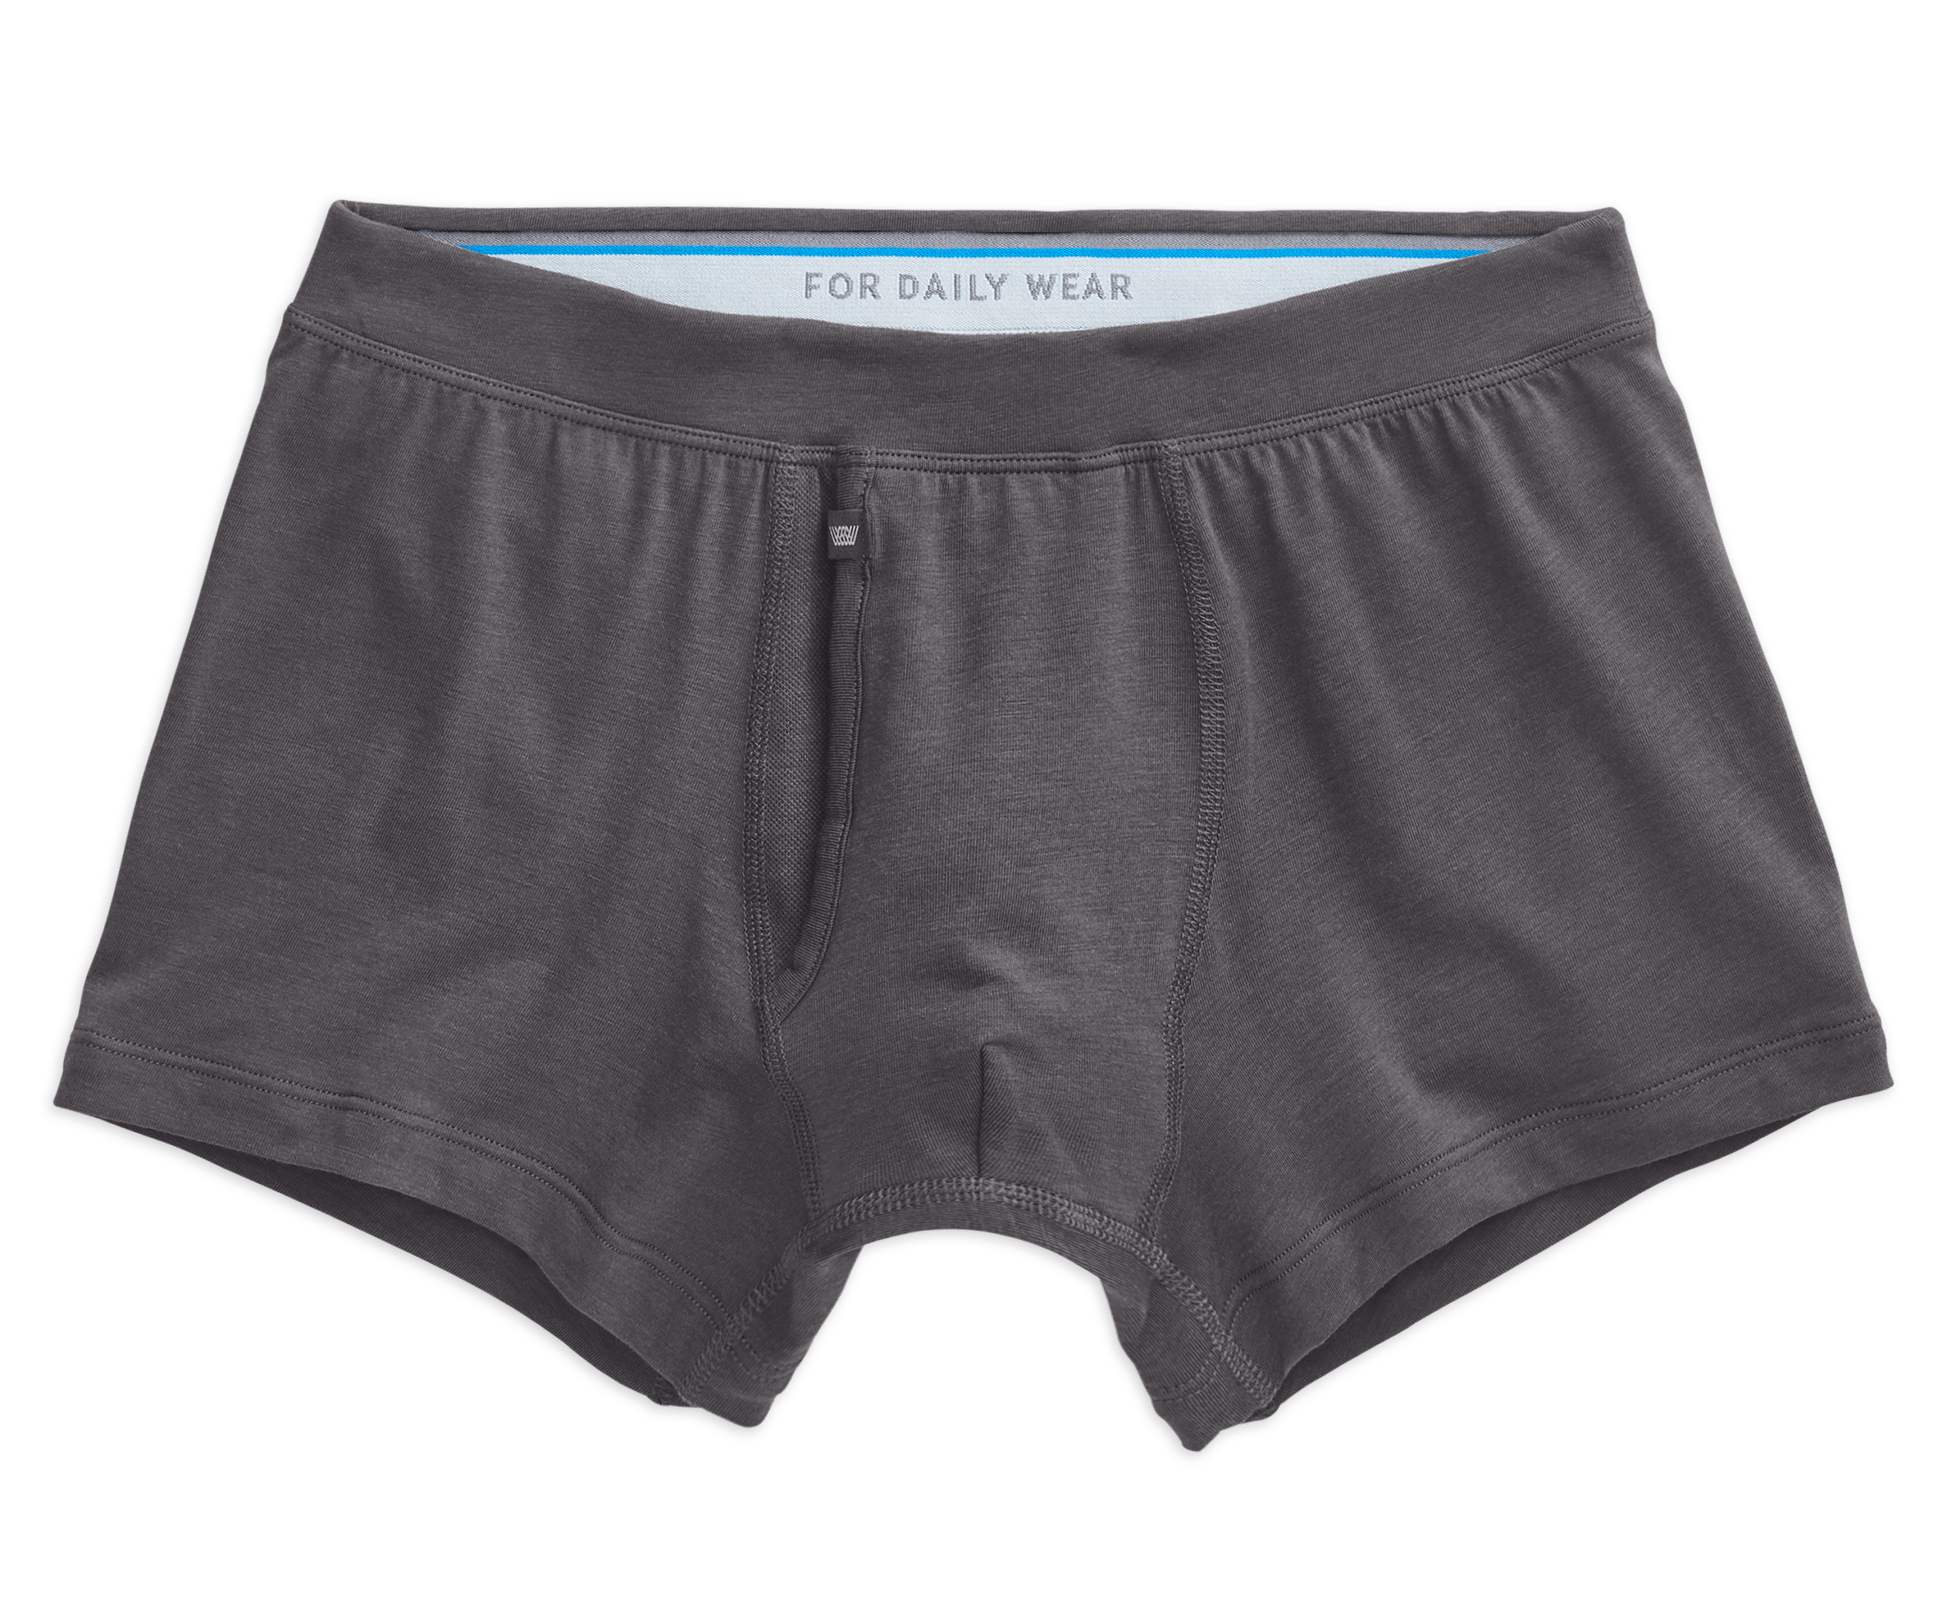 Silver Underwear - Antimicrobial Underwear